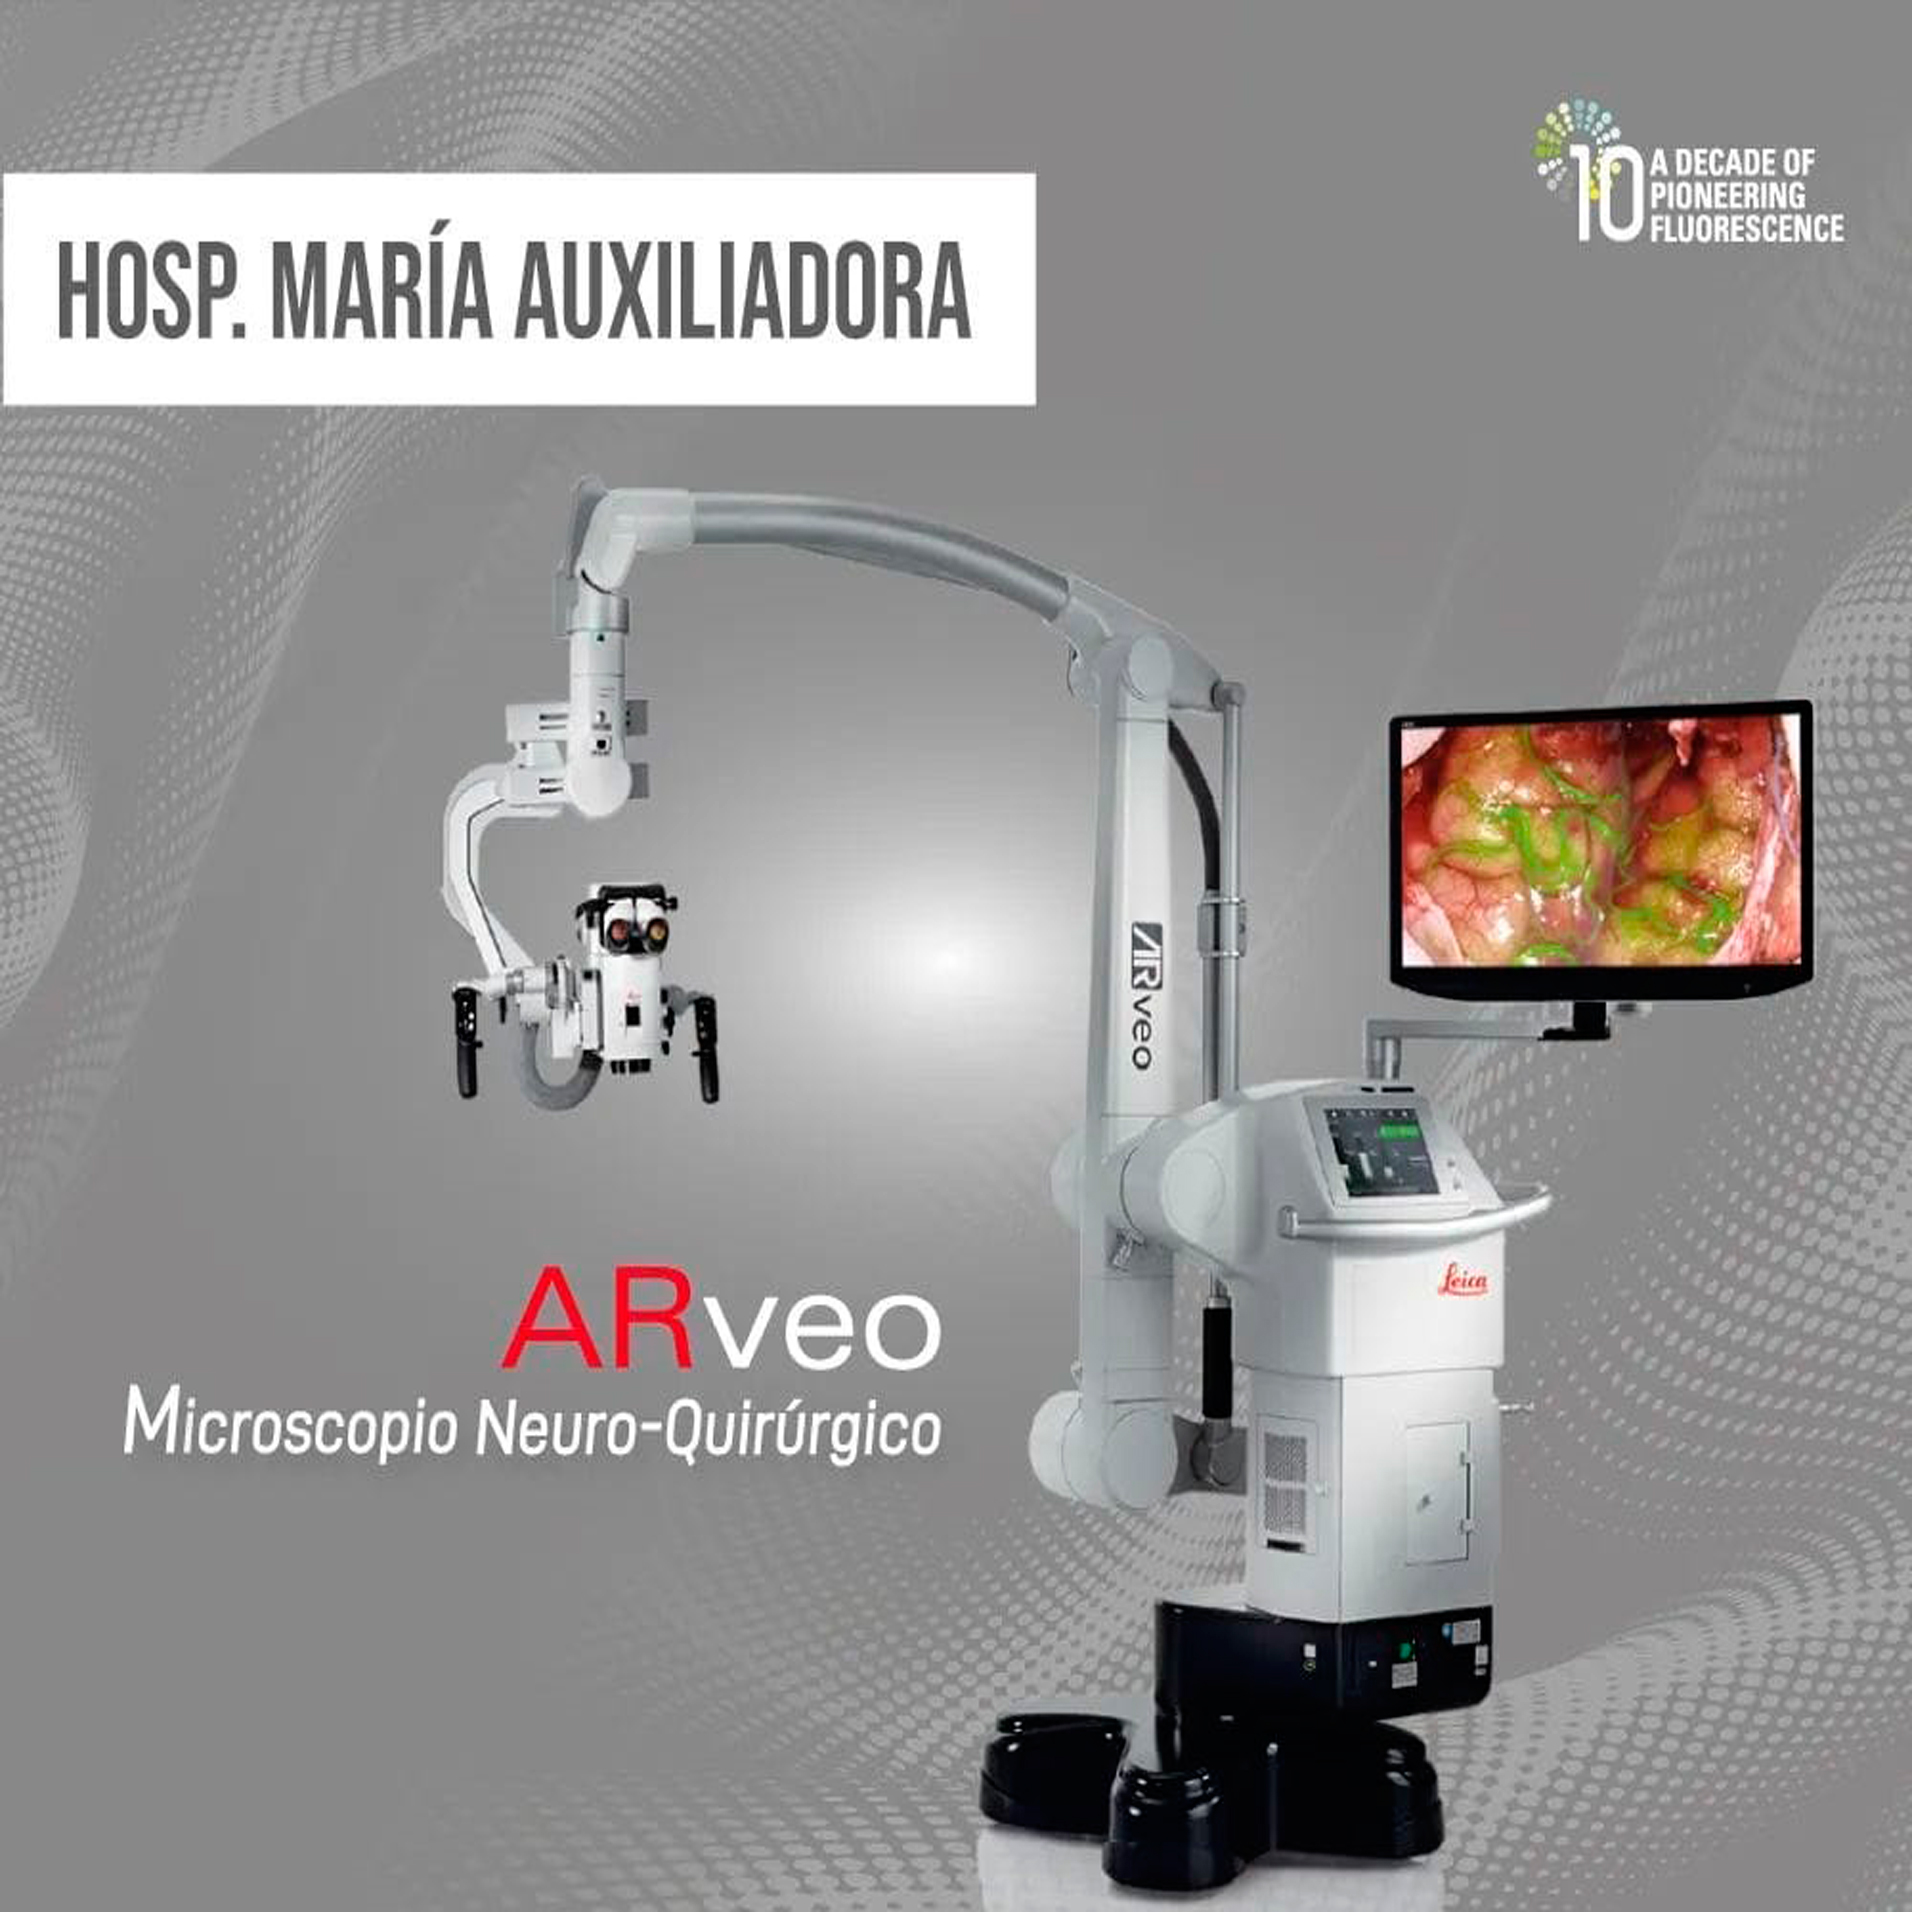 Hospital María Auxiliadora adquiere Microscopio Neuro-Quirúrgico Leica Arveo